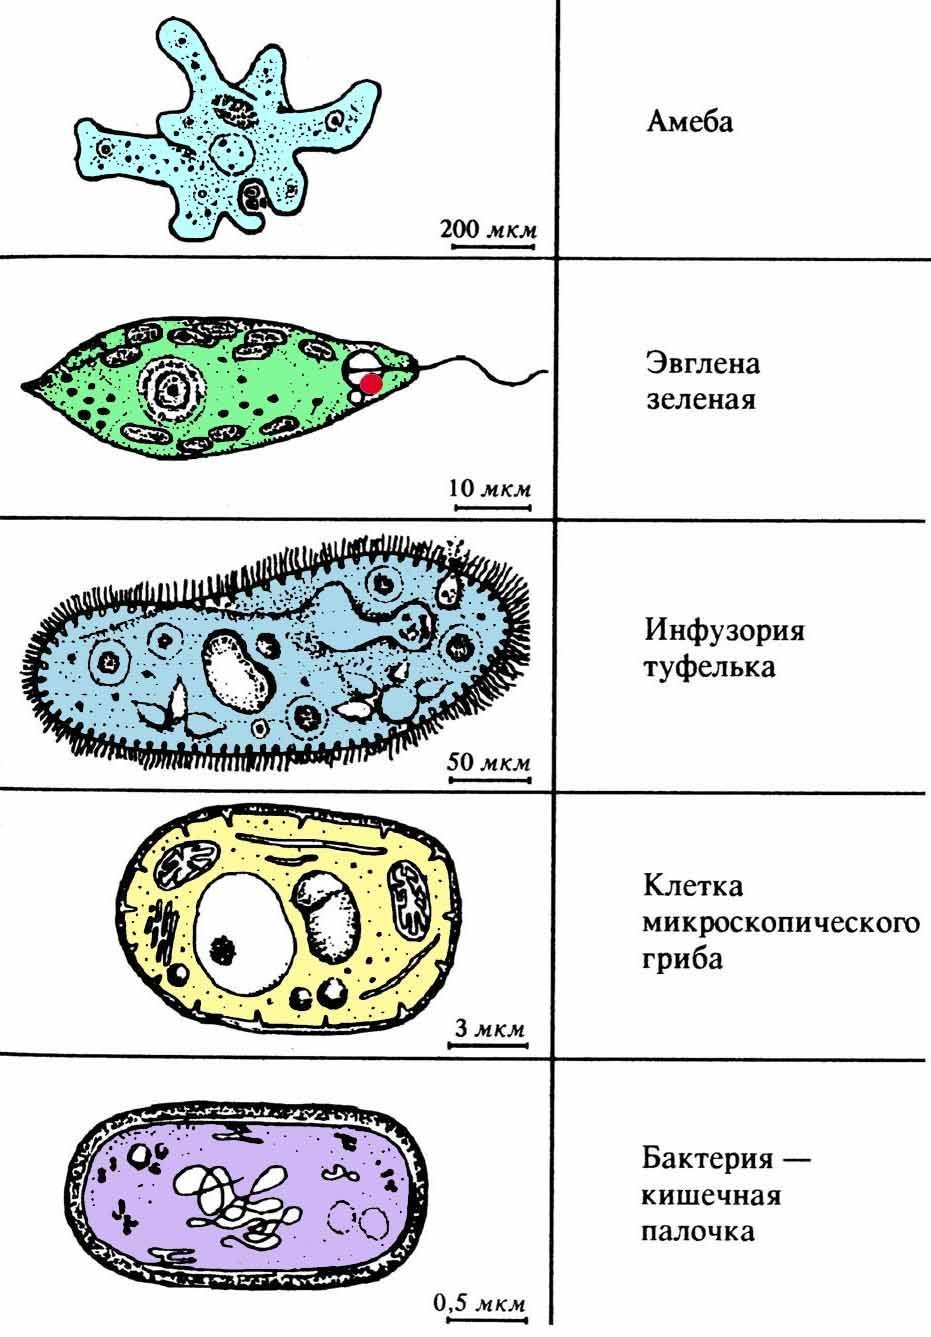 Пили у простейших. Клетка по биологии инфузория туфелька. Инфузории протисты. Одноклеточные бактерии названия. Простейшие одноклеточные организмы.